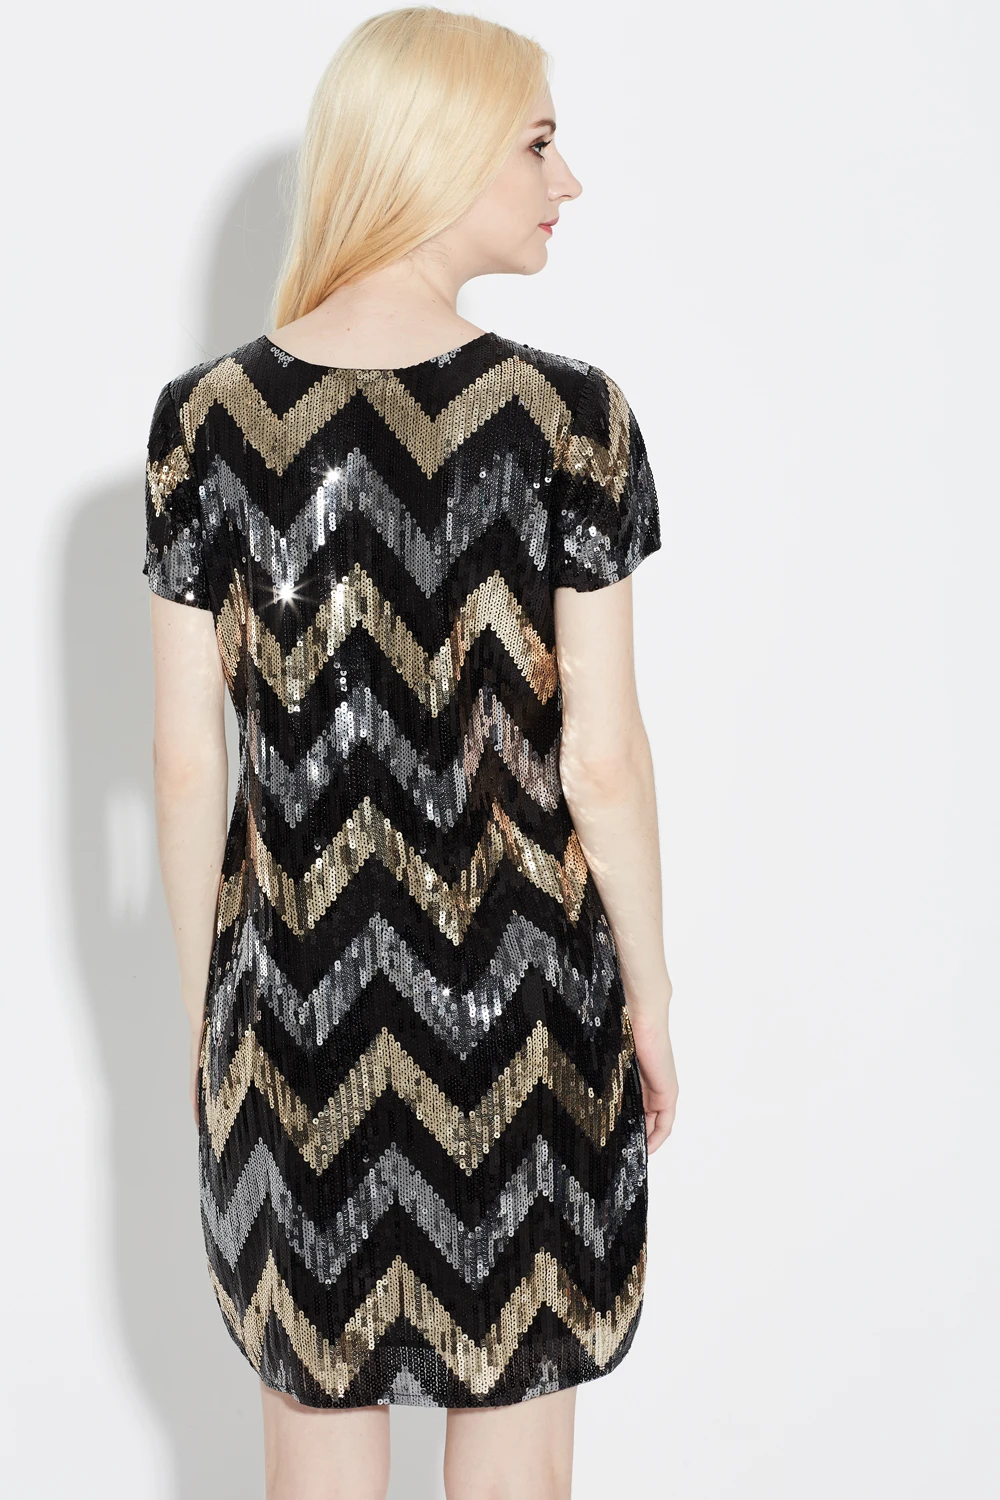 Платье с волнистым геометрическим узором, прямое винтажное платье в стиле Гэтсби с черными и золотыми блестками, потрясающие вечерние мини-платья с коротким рукавом